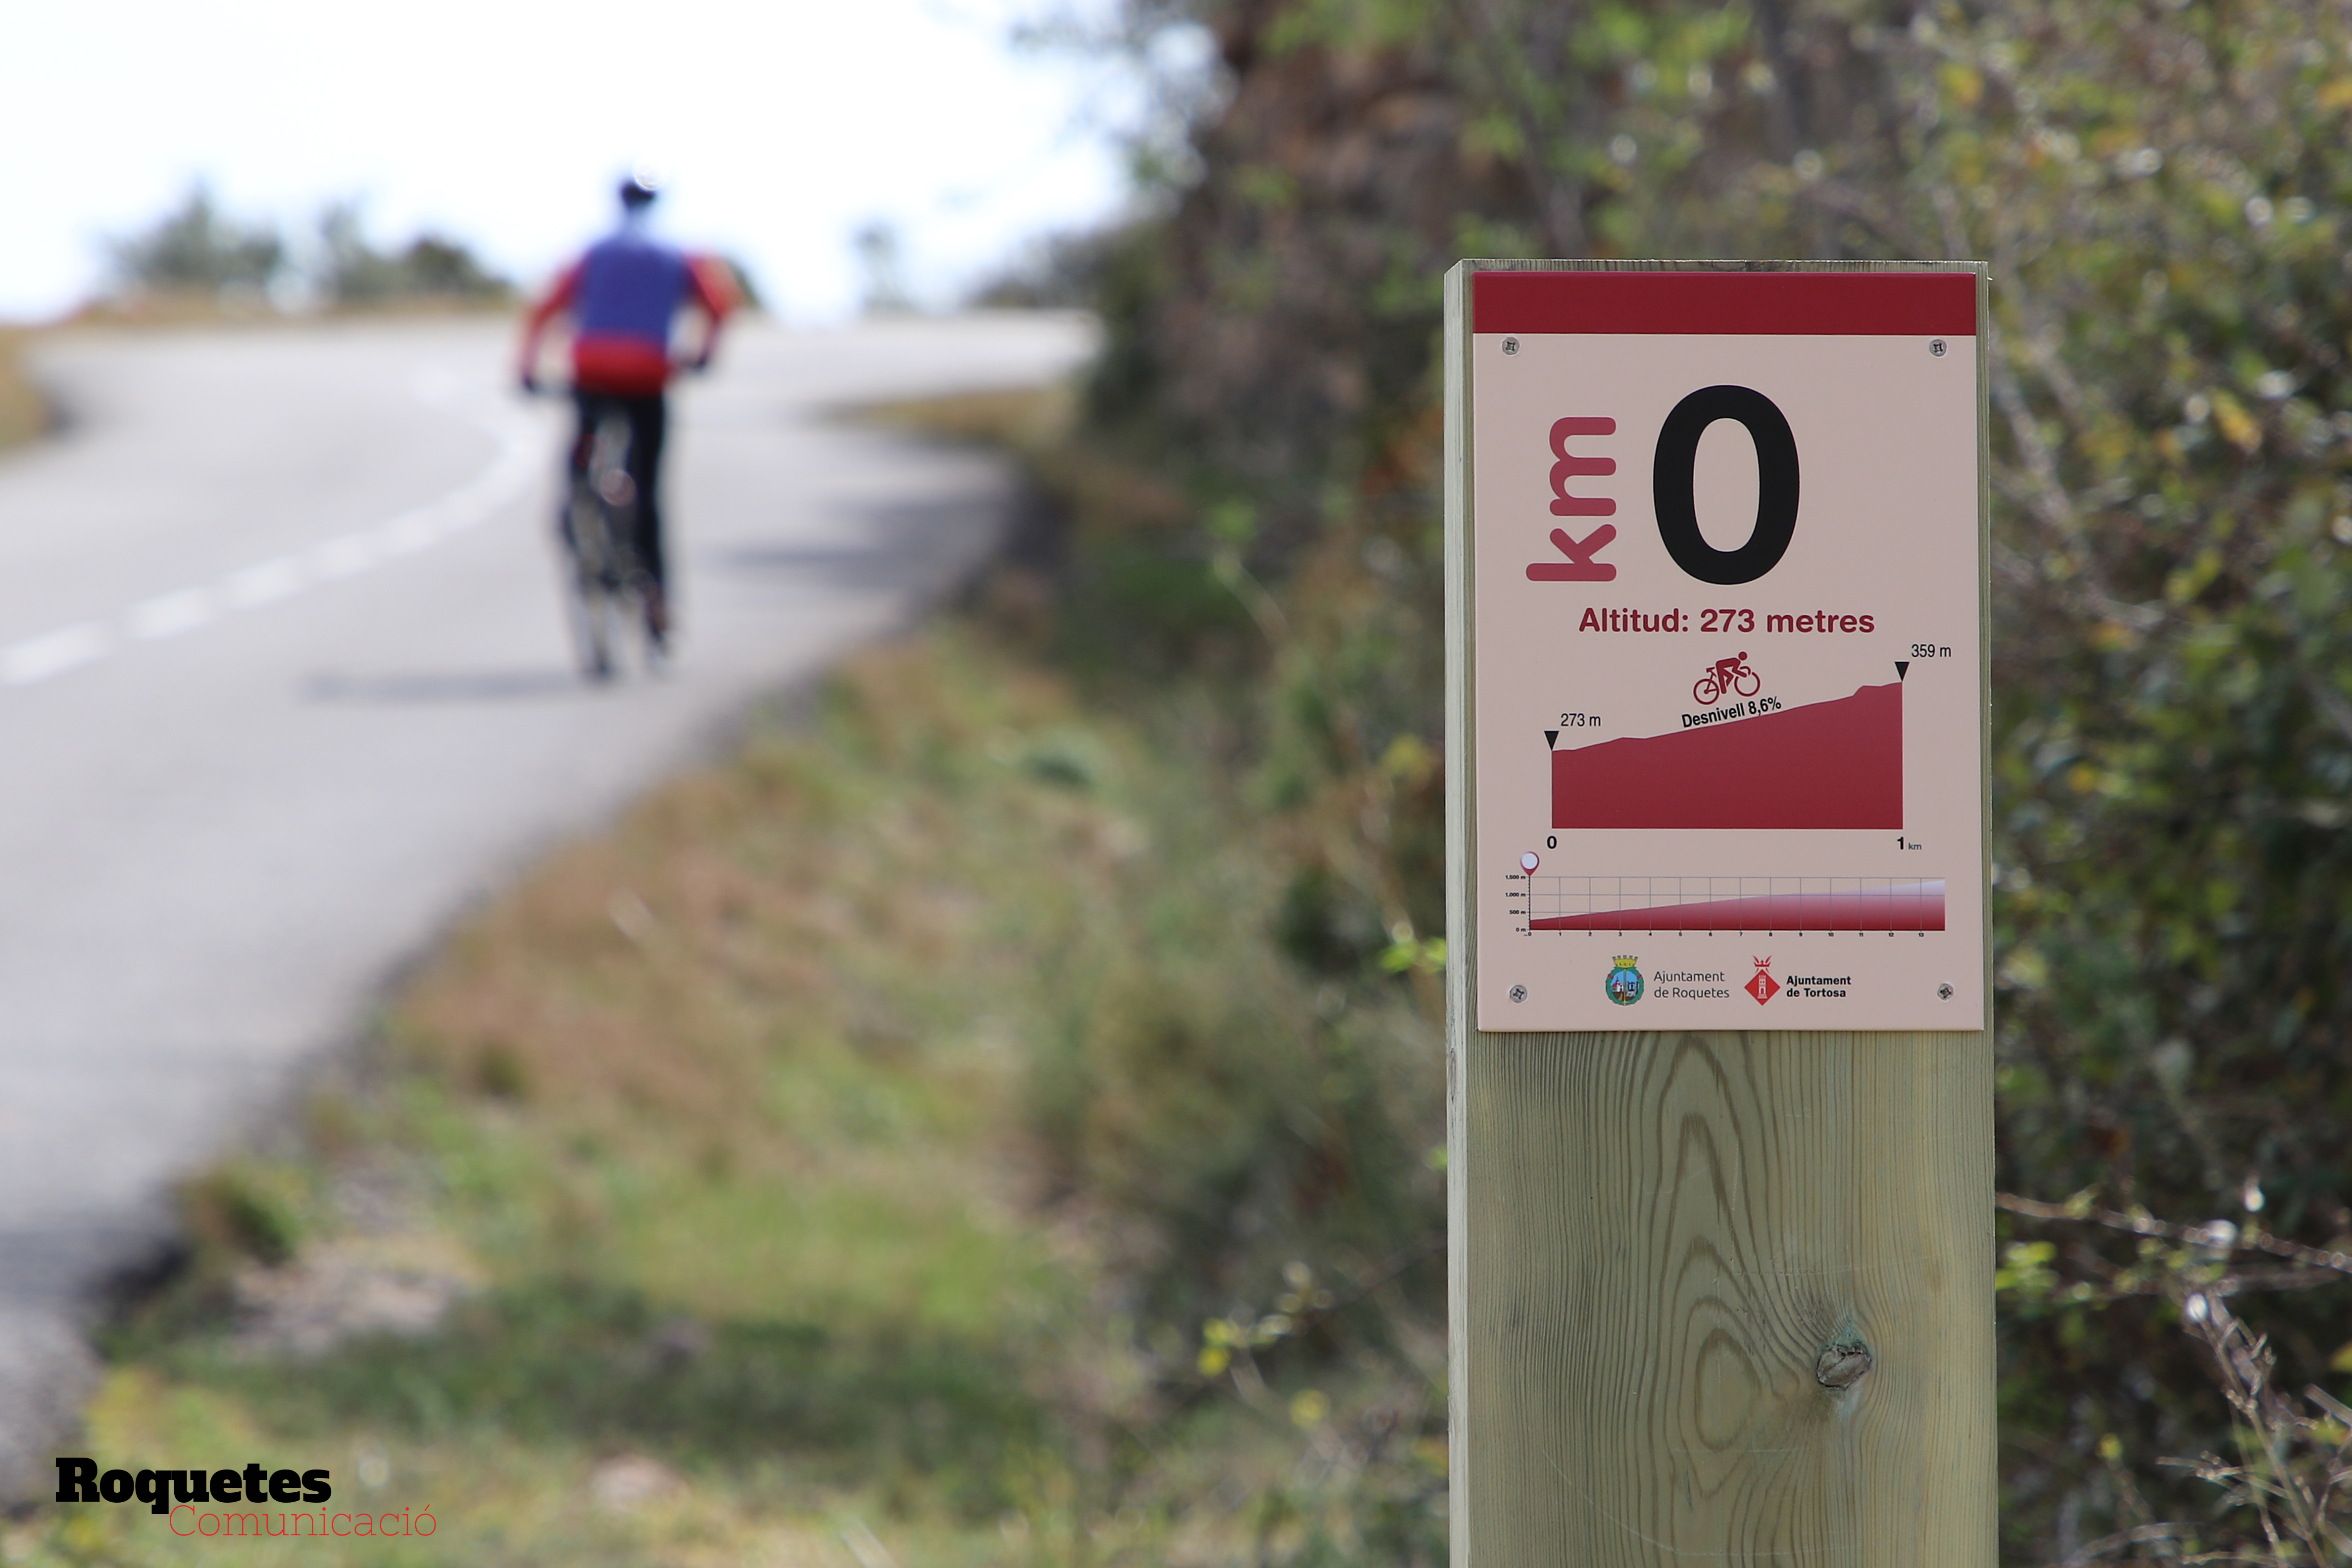 La Mancomunitat Tortosa-Roquetes instal·la una senyalització Turística a la carretera al cim de Caro